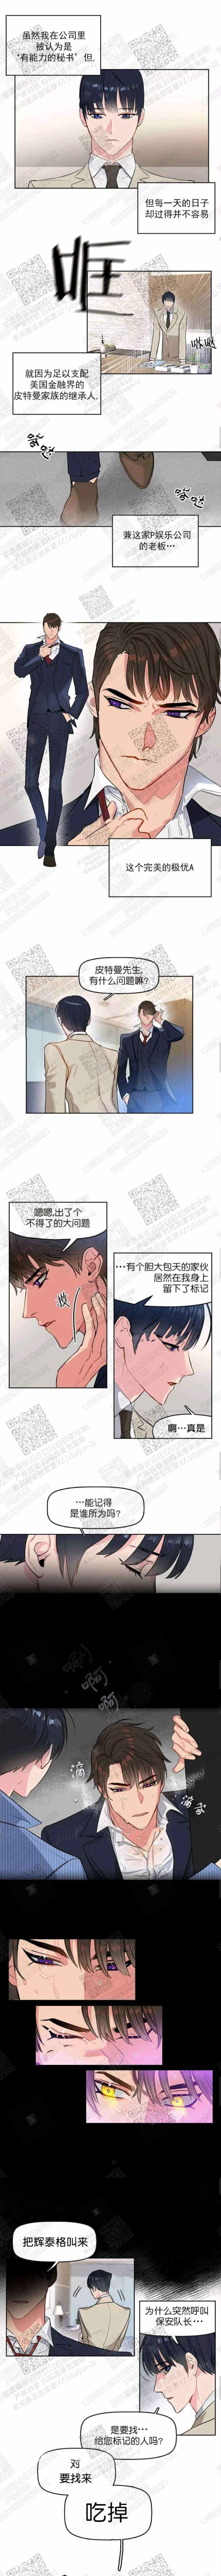 啵乐官网免费漫画1